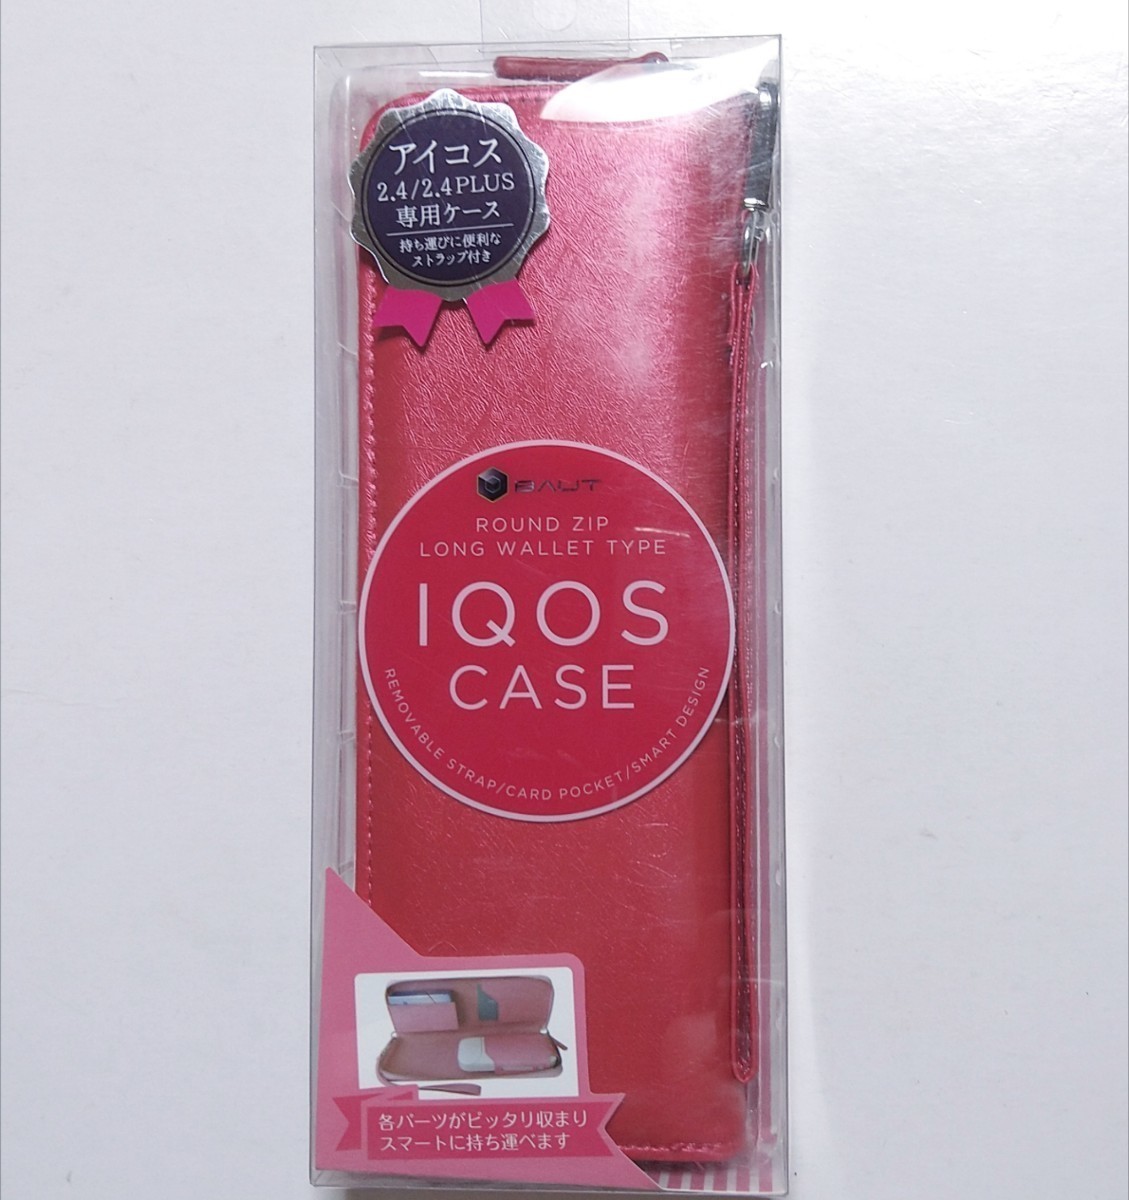 iQOSCASE ... для   чехол для хранения    элегантный    красный  ...2.4/2.4 PLUS  личное пользование  кейс   мешочек  